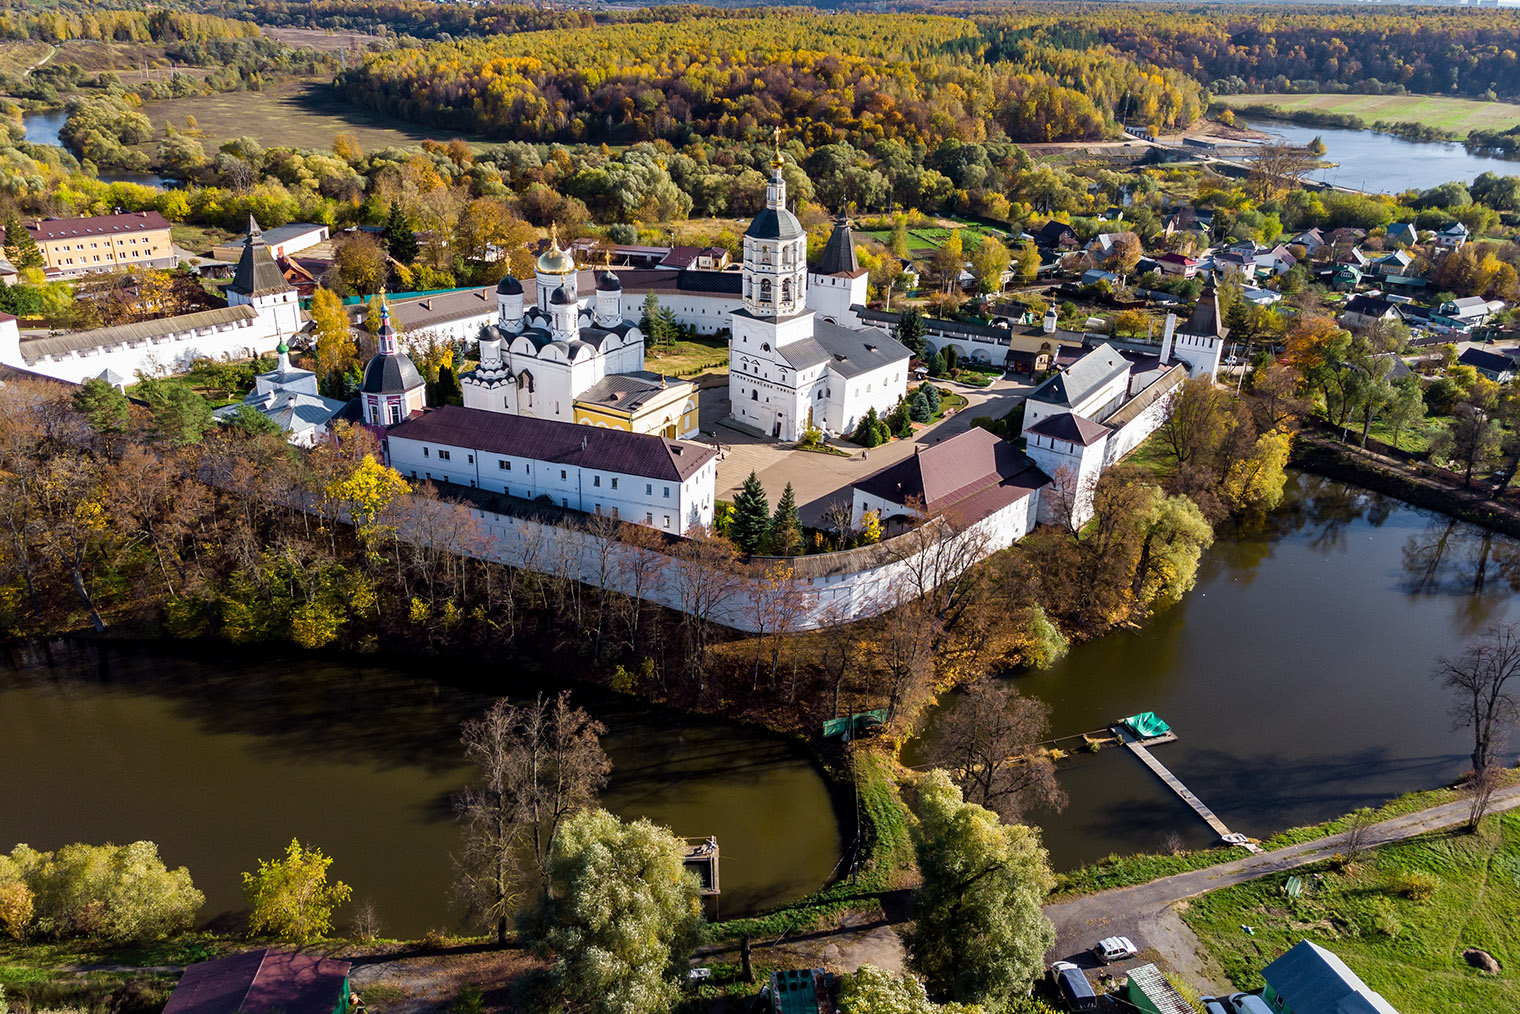 Свято-Пафнутьев Боровский монастырь был основан в 1444 году, трижды подвергался разрушению, но сейчас почти полностью восстановлен. Фотография: Photochur / Shutterstock / Fotodom